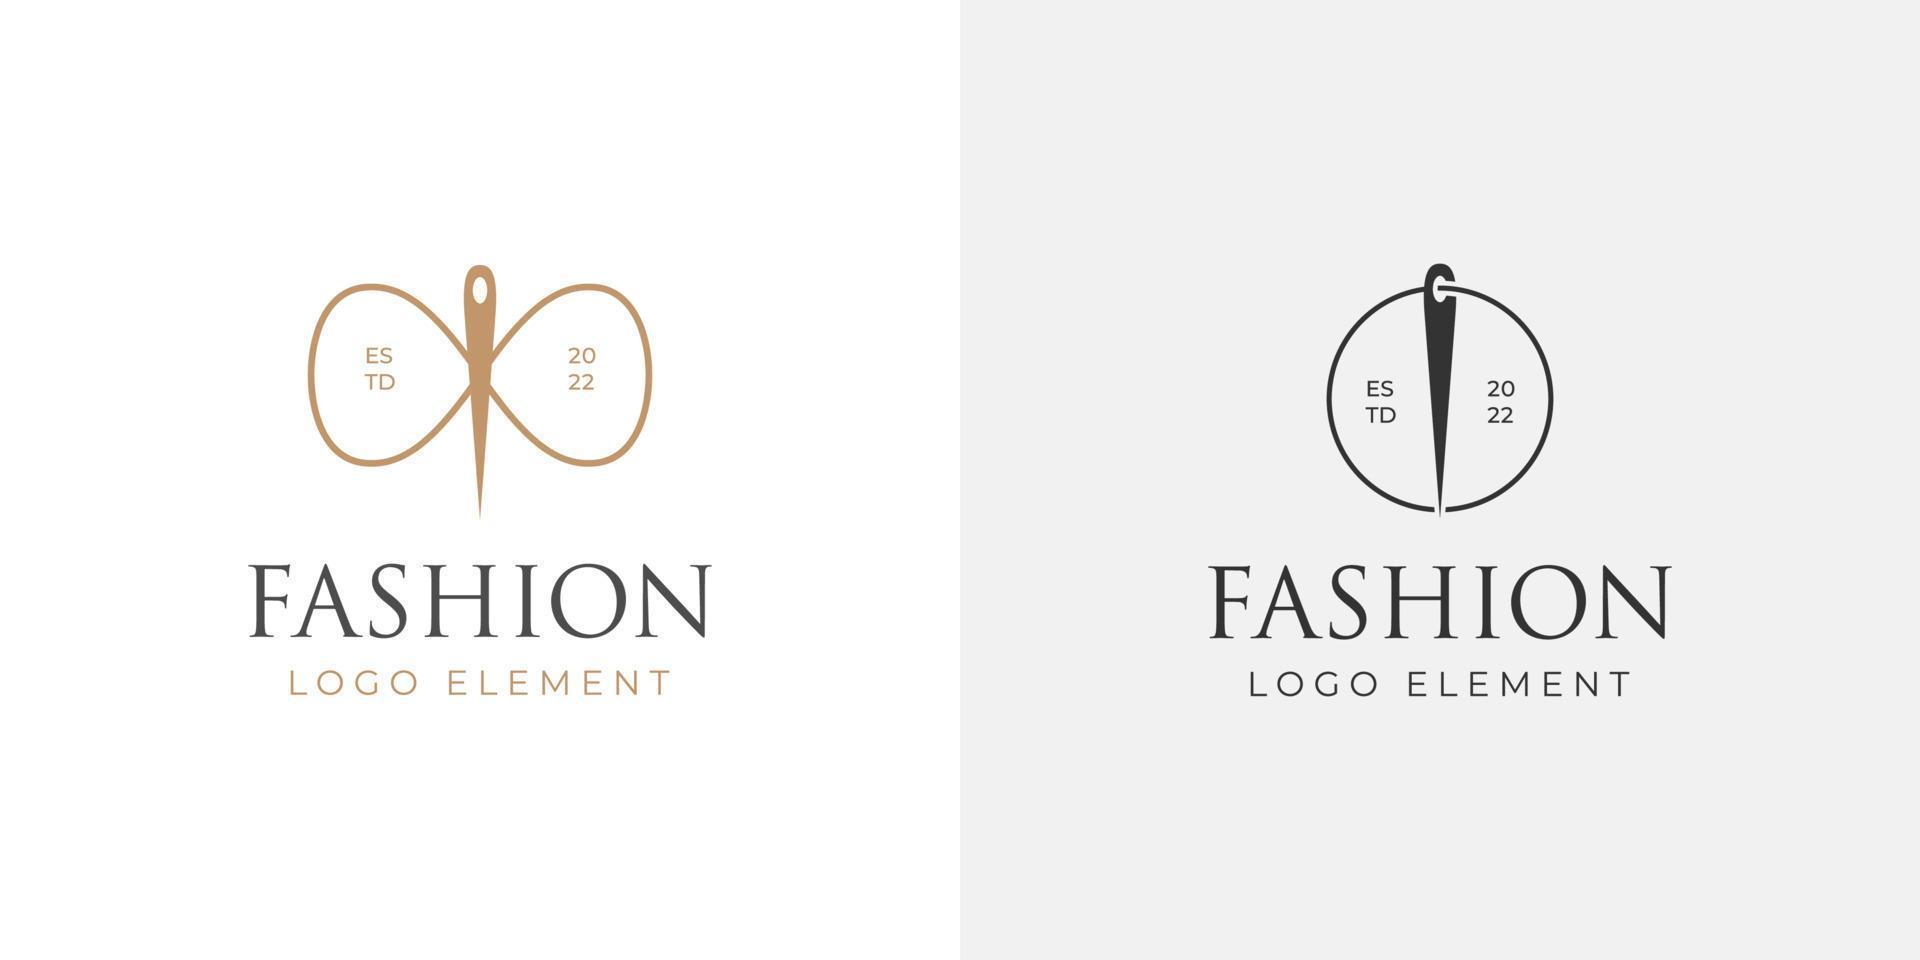 elegante minimalista Sastre tienda Moda logo diseño con de coser aguja vector elemento